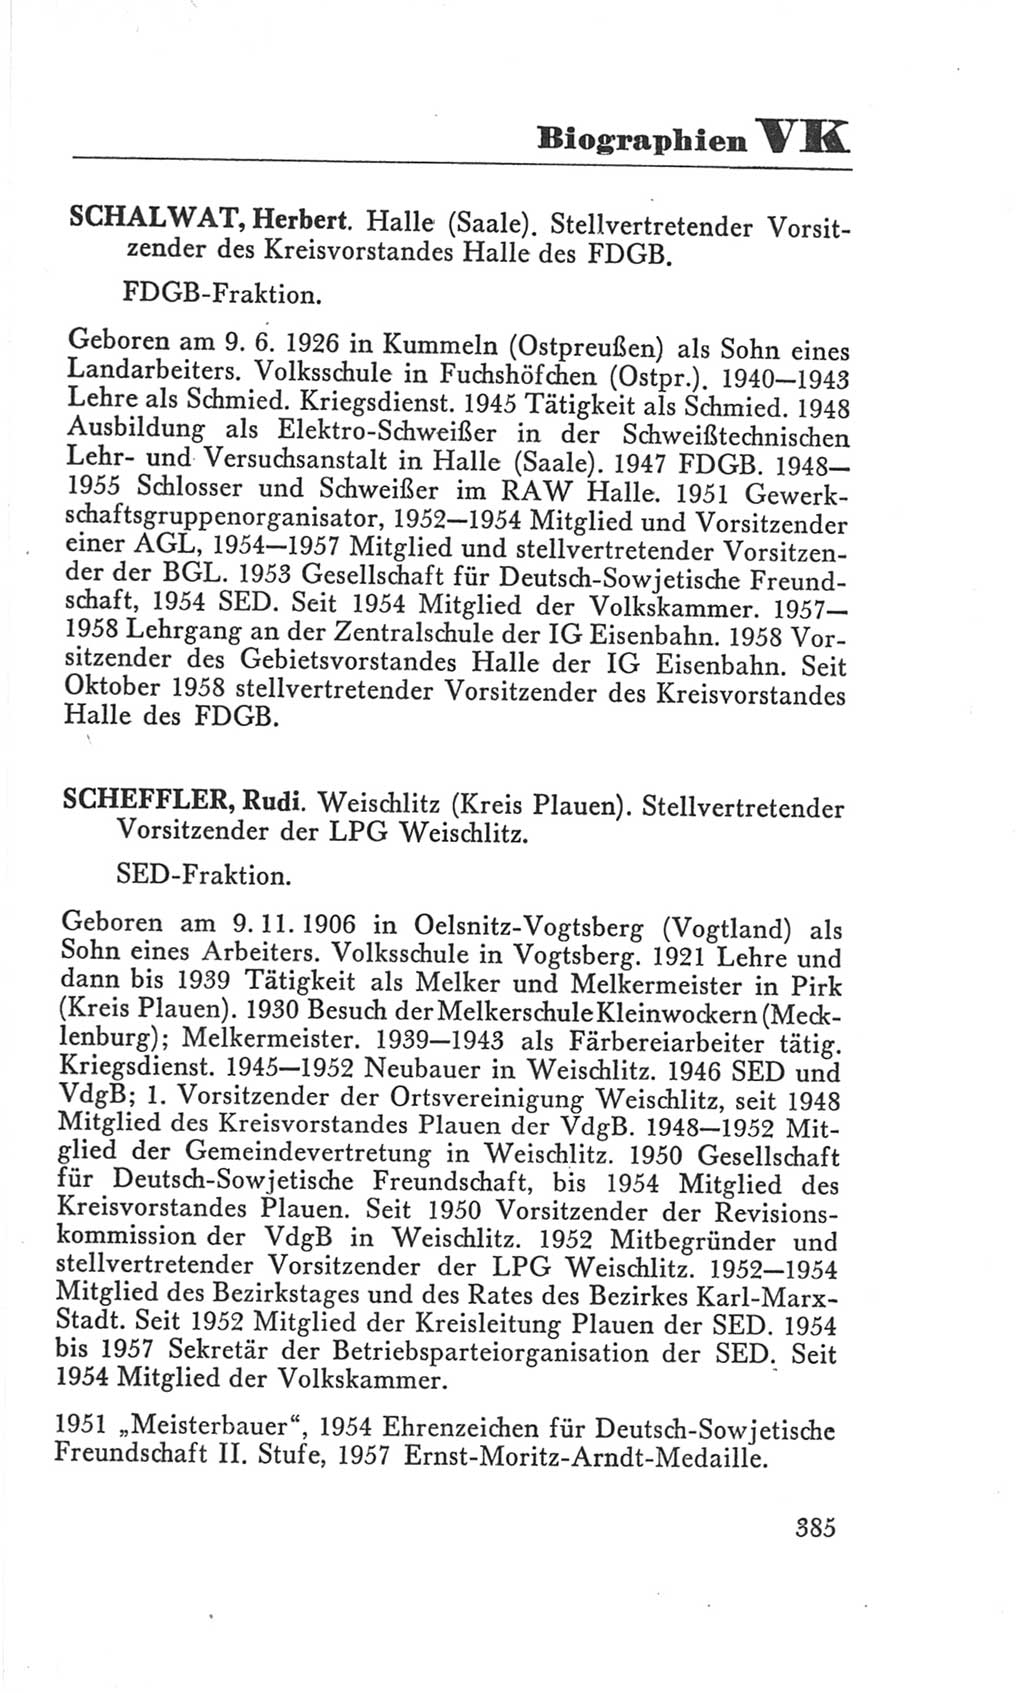 Handbuch der Volkskammer (VK) der Deutschen Demokratischen Republik (DDR), 3. Wahlperiode 1958-1963, Seite 385 (Hdb. VK. DDR 3. WP. 1958-1963, S. 385)